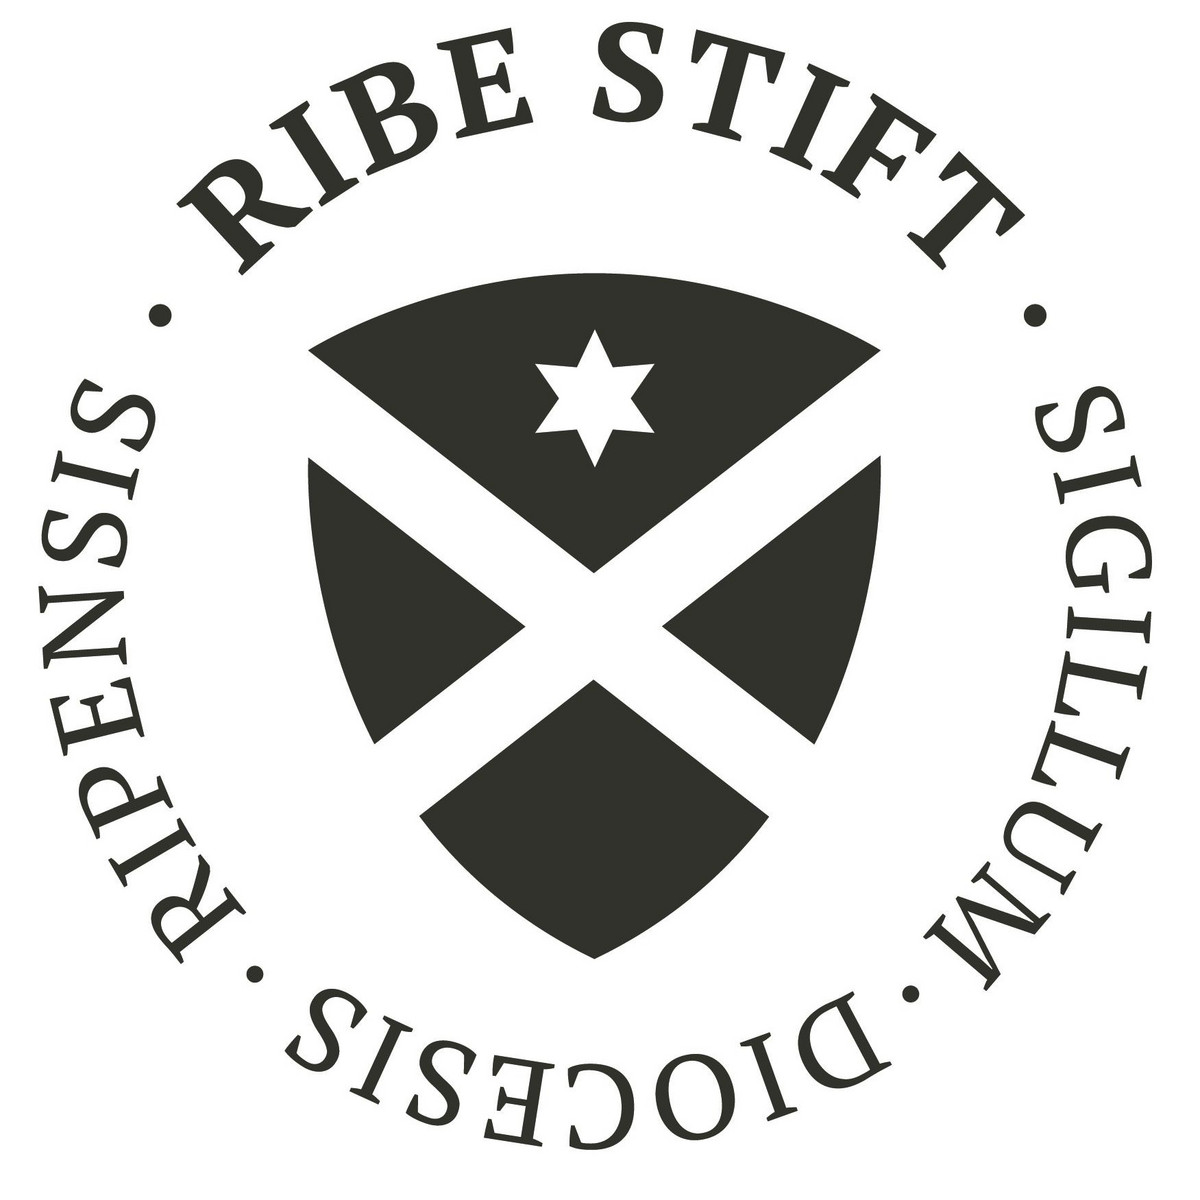 Billede af Ribe Stifts segl i sort